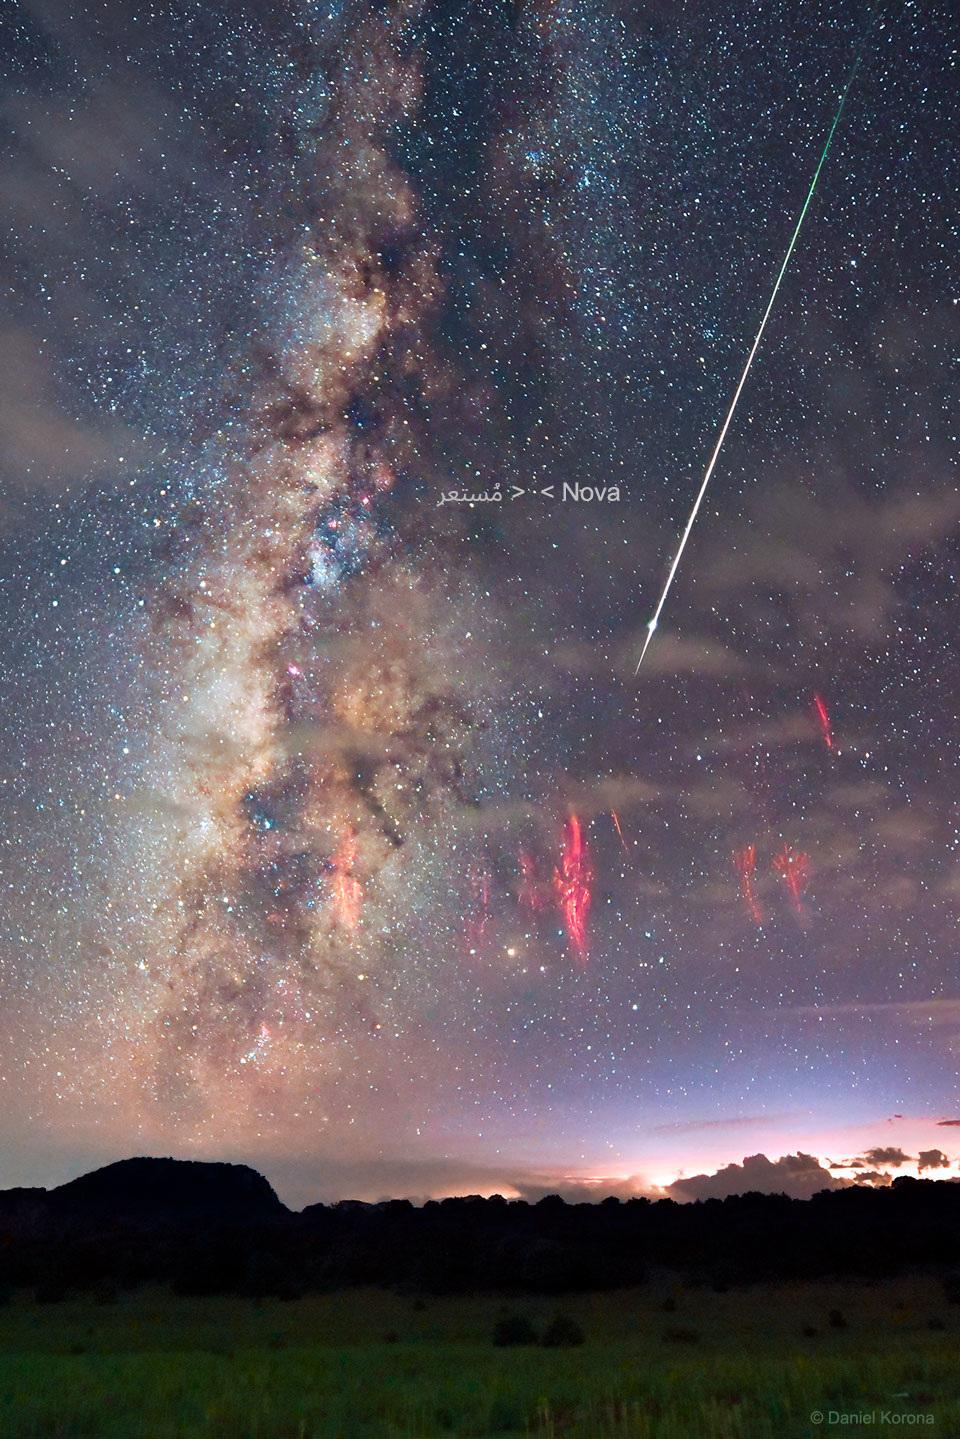 صورة تتناثر فيها النجوم ملتقطة بمجال زاويّ طويل لمجرّة درب التبّانة وعلى امتدادها  شهاب برشاوي وتحته مجموعة من عفاريت البرق الحمراء، وفي وسط الصورة يمكن رؤية مستعر RS الحواء كنجم بعيد.